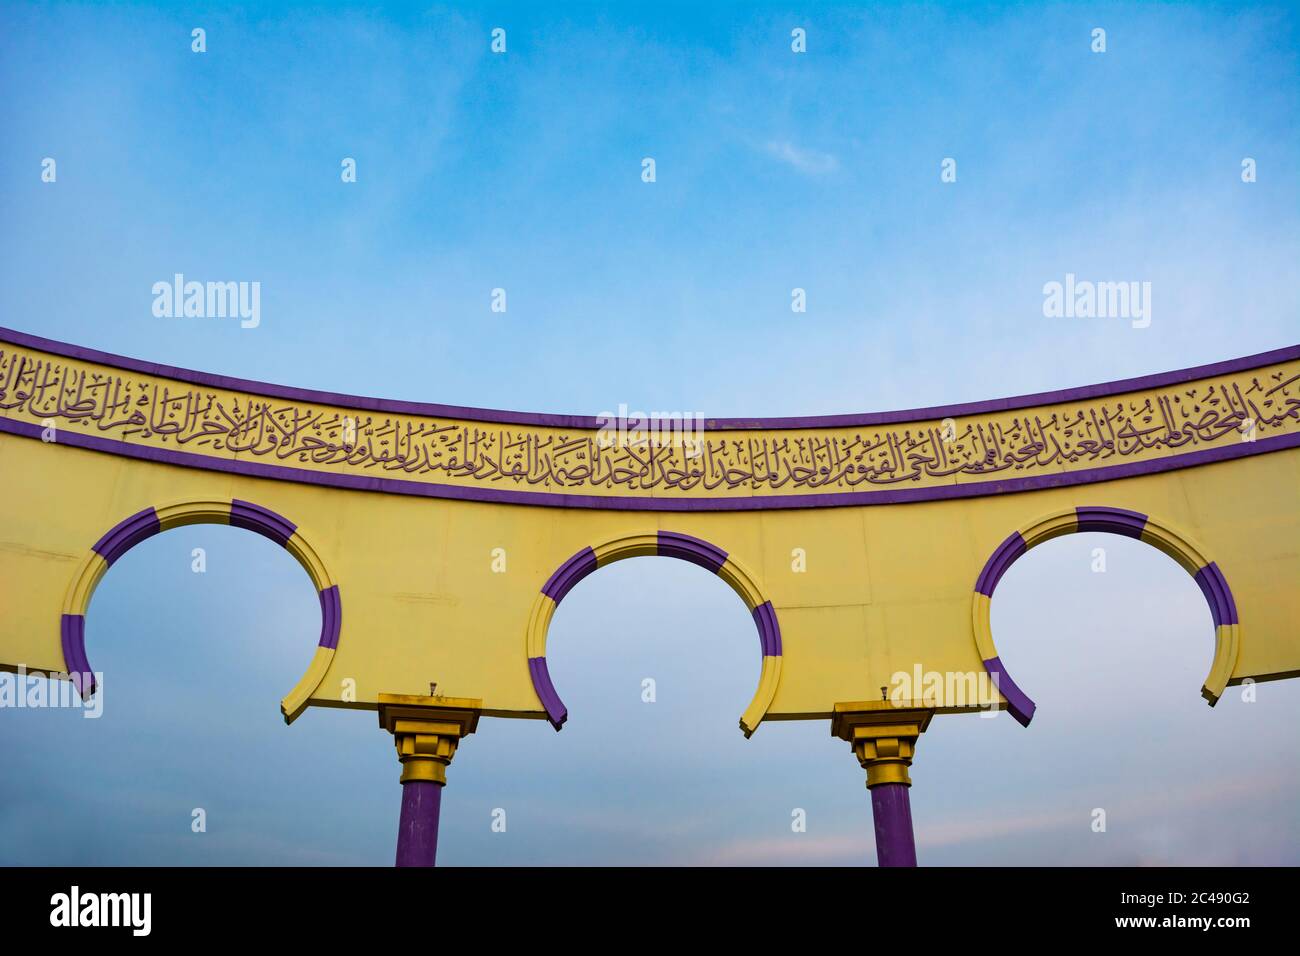 Semarang, Indonésie - VERS novembre 2019 : le mur avec la calligraphie arabe et la décoration de l'arche à Masjid Agung Jawa Tengah (Grande Mosquée de Java central) Banque D'Images